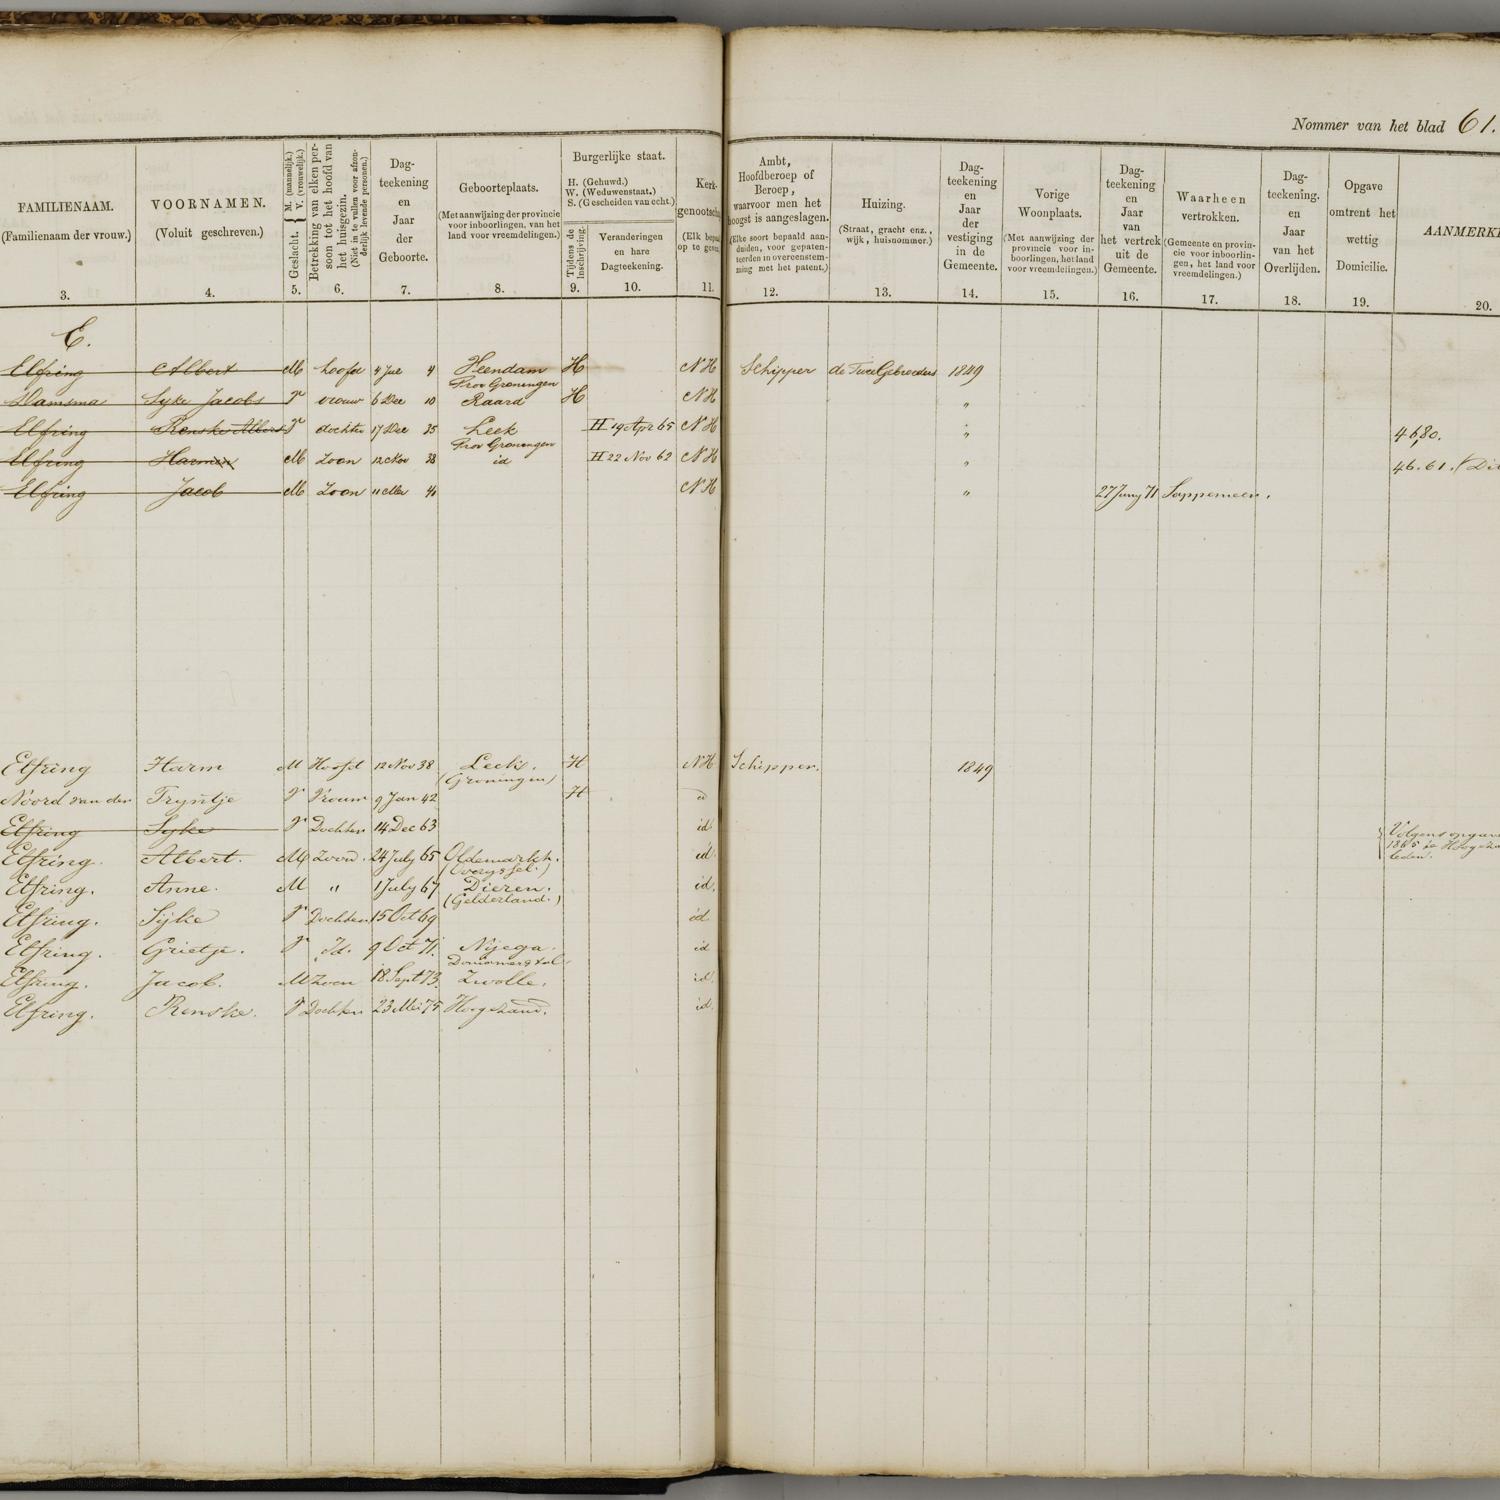 Civil registry, Leeuwarden, 1859-1876, sheet 61